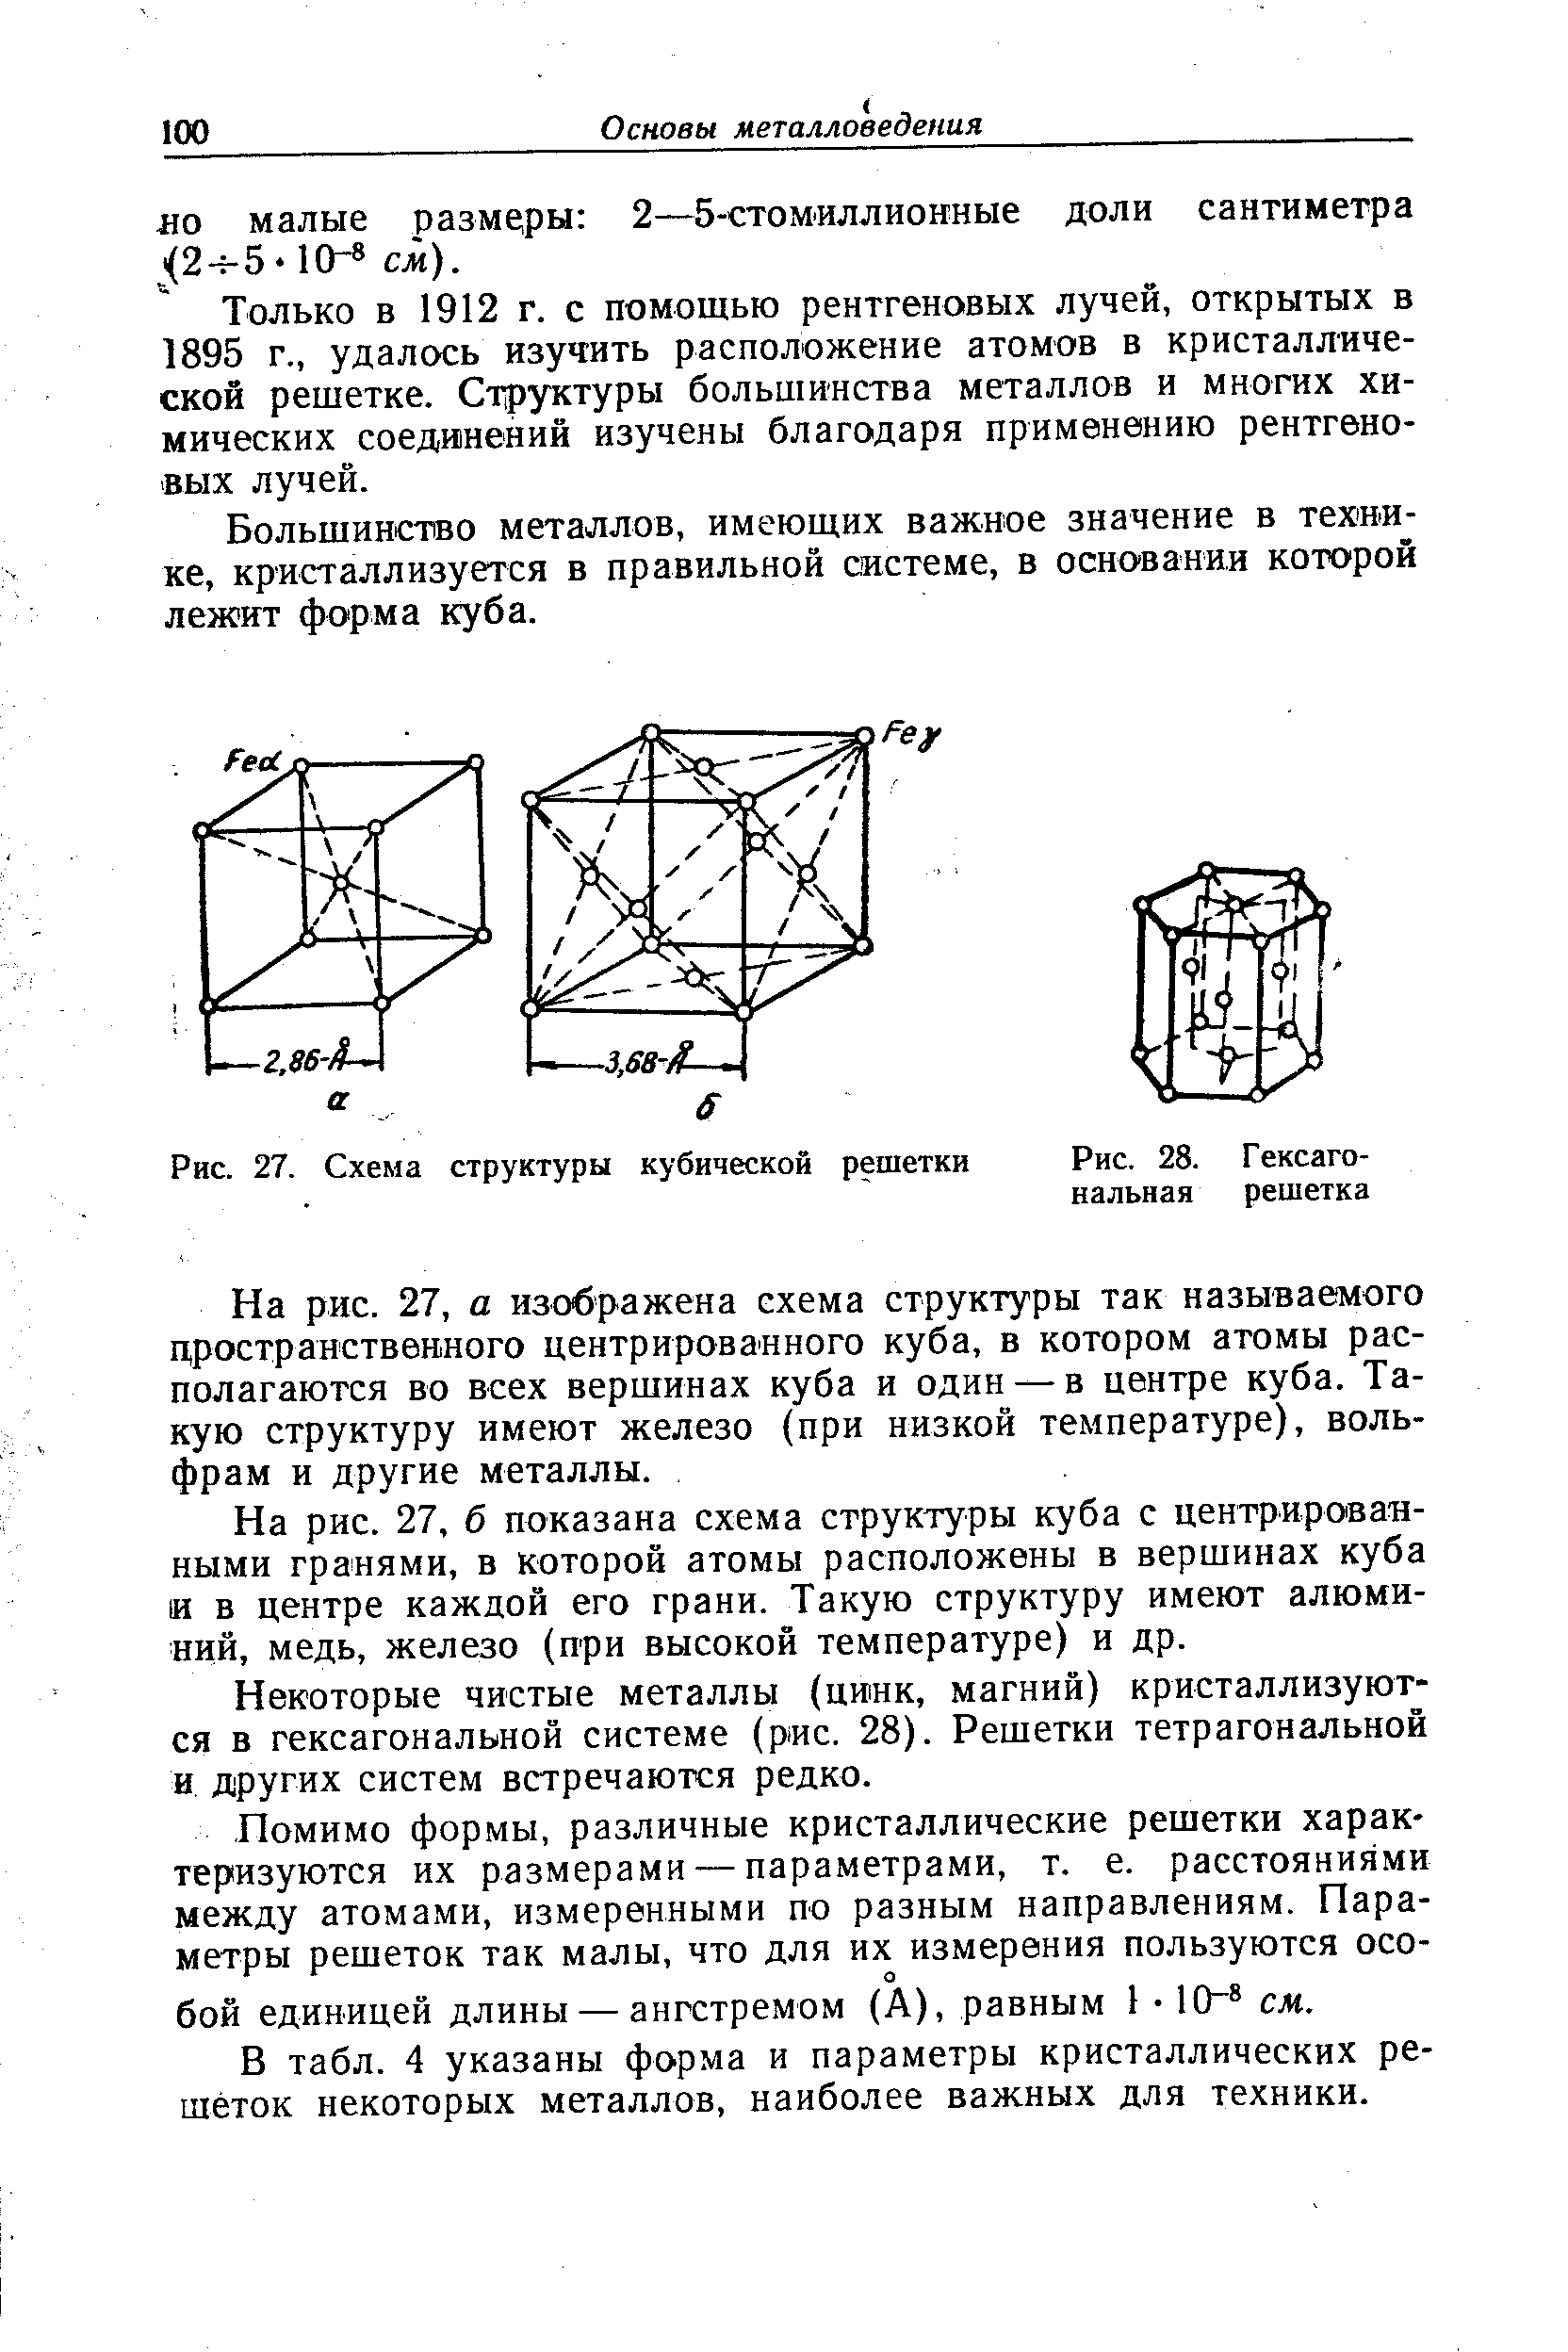 Большинство металлов, имеющих важное значение в технике, кристаллизуется в правильной системе, в основании которой лежит форма куба.
